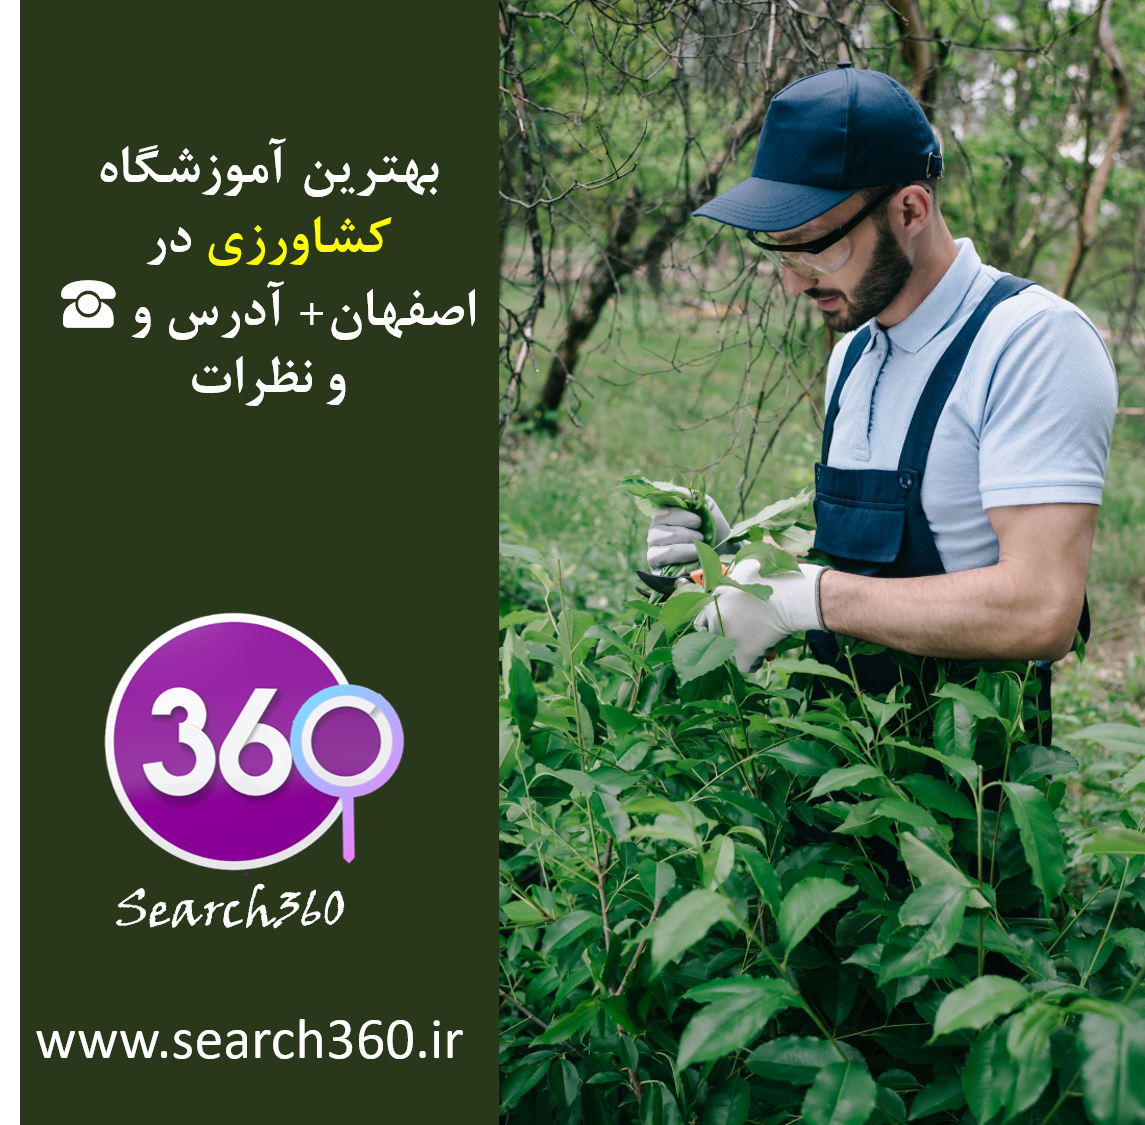 بهترین آموزشگاه کشاورزی در اصفهان با نظرات ، تلفن ☎️ و آدرس